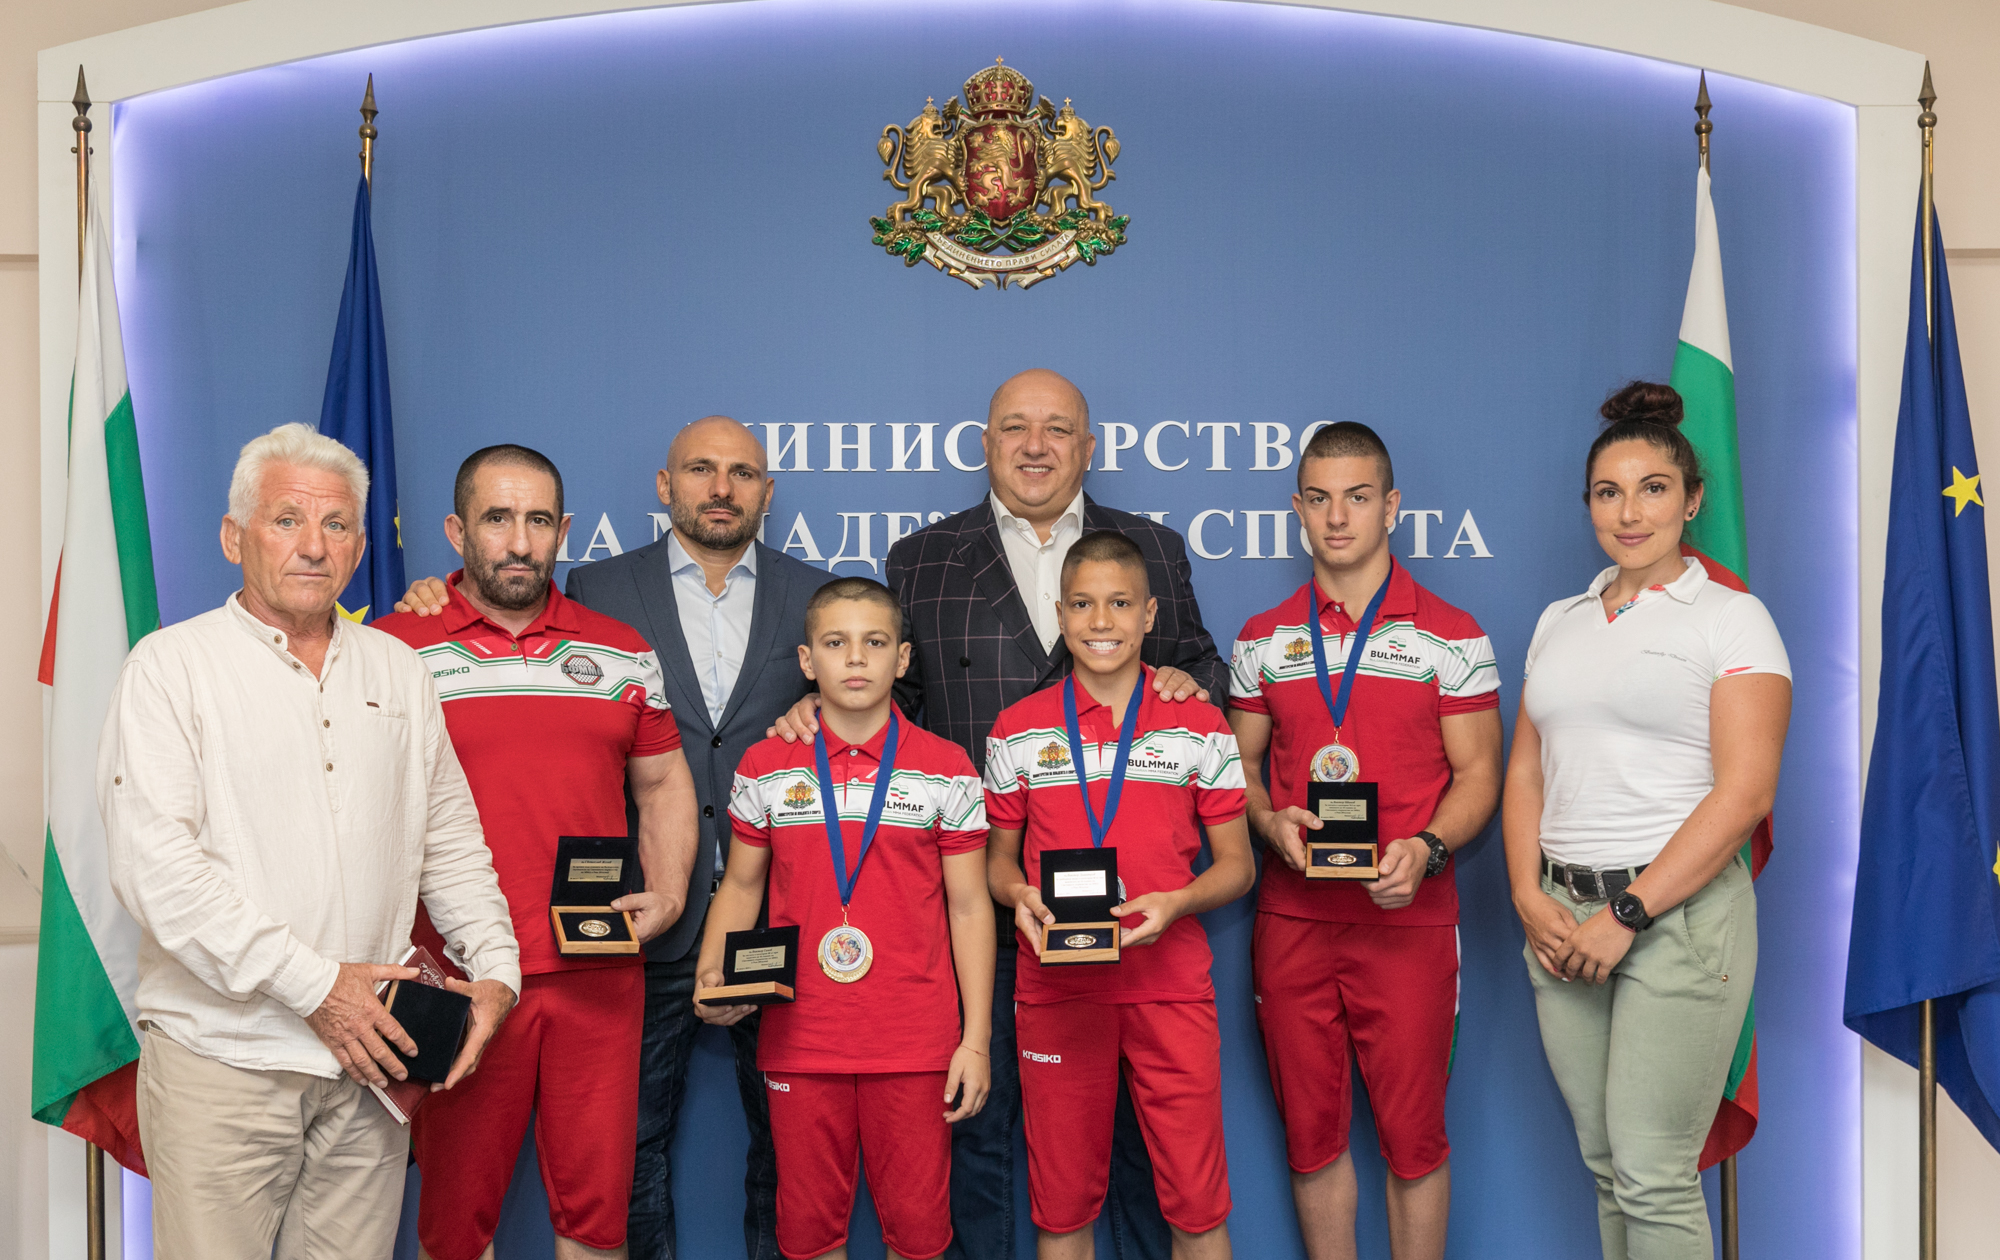 Министър Кралев награди медалистите от Световното първенство по ММА